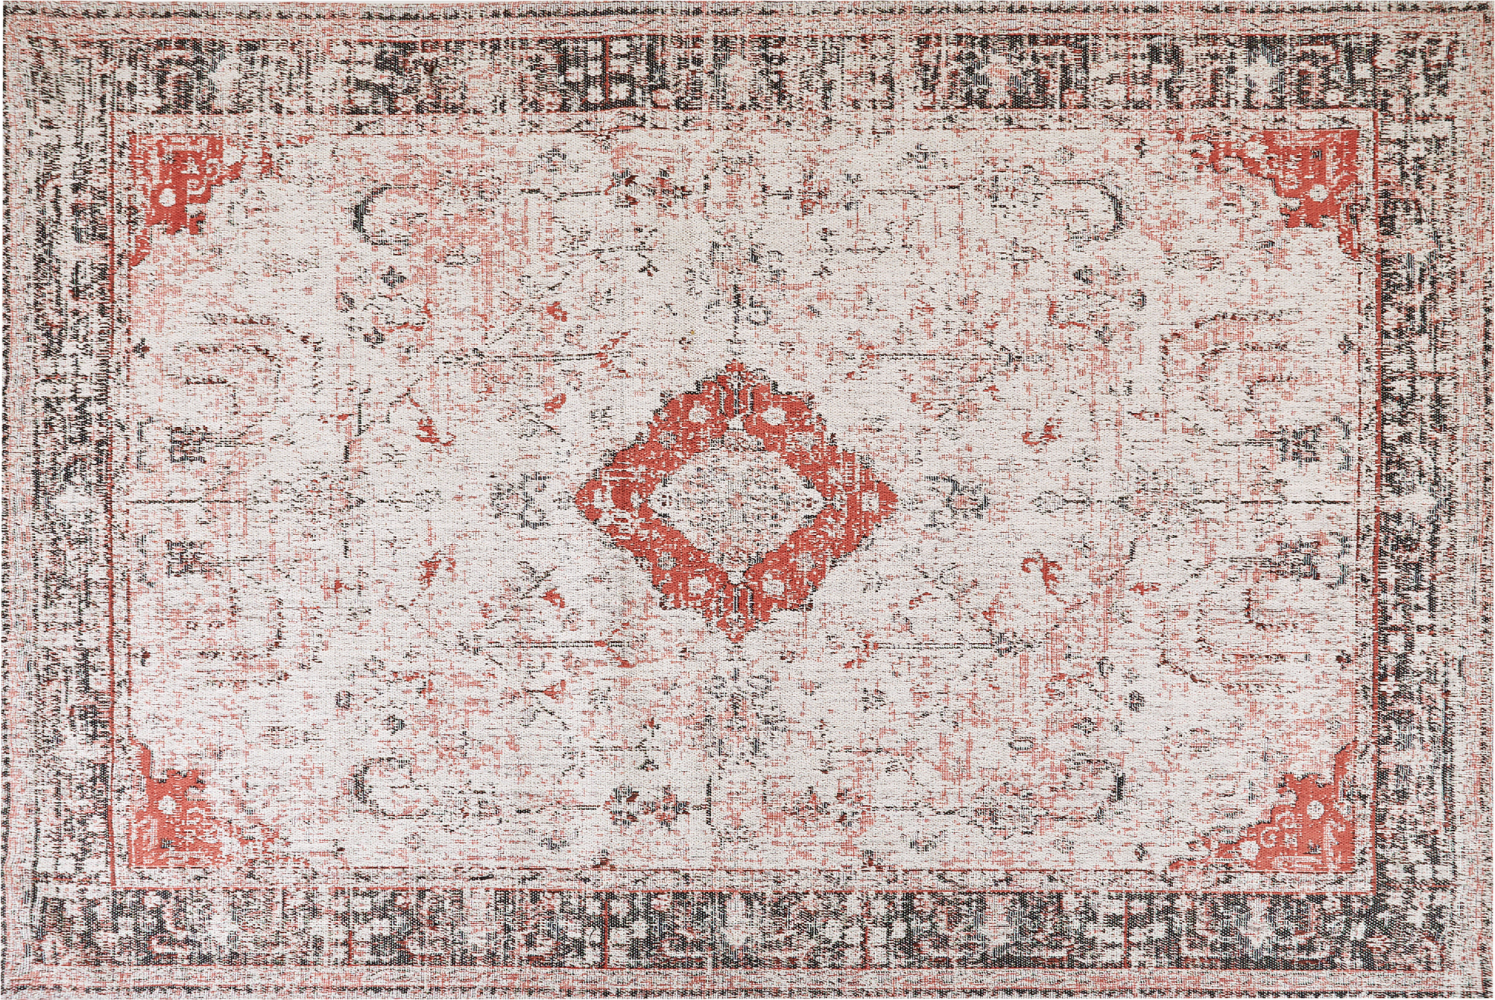 Teppich Baumwolle rot beige 200 x 300 cm orientalisches Muster Kurzflor ATTERA Bild 1